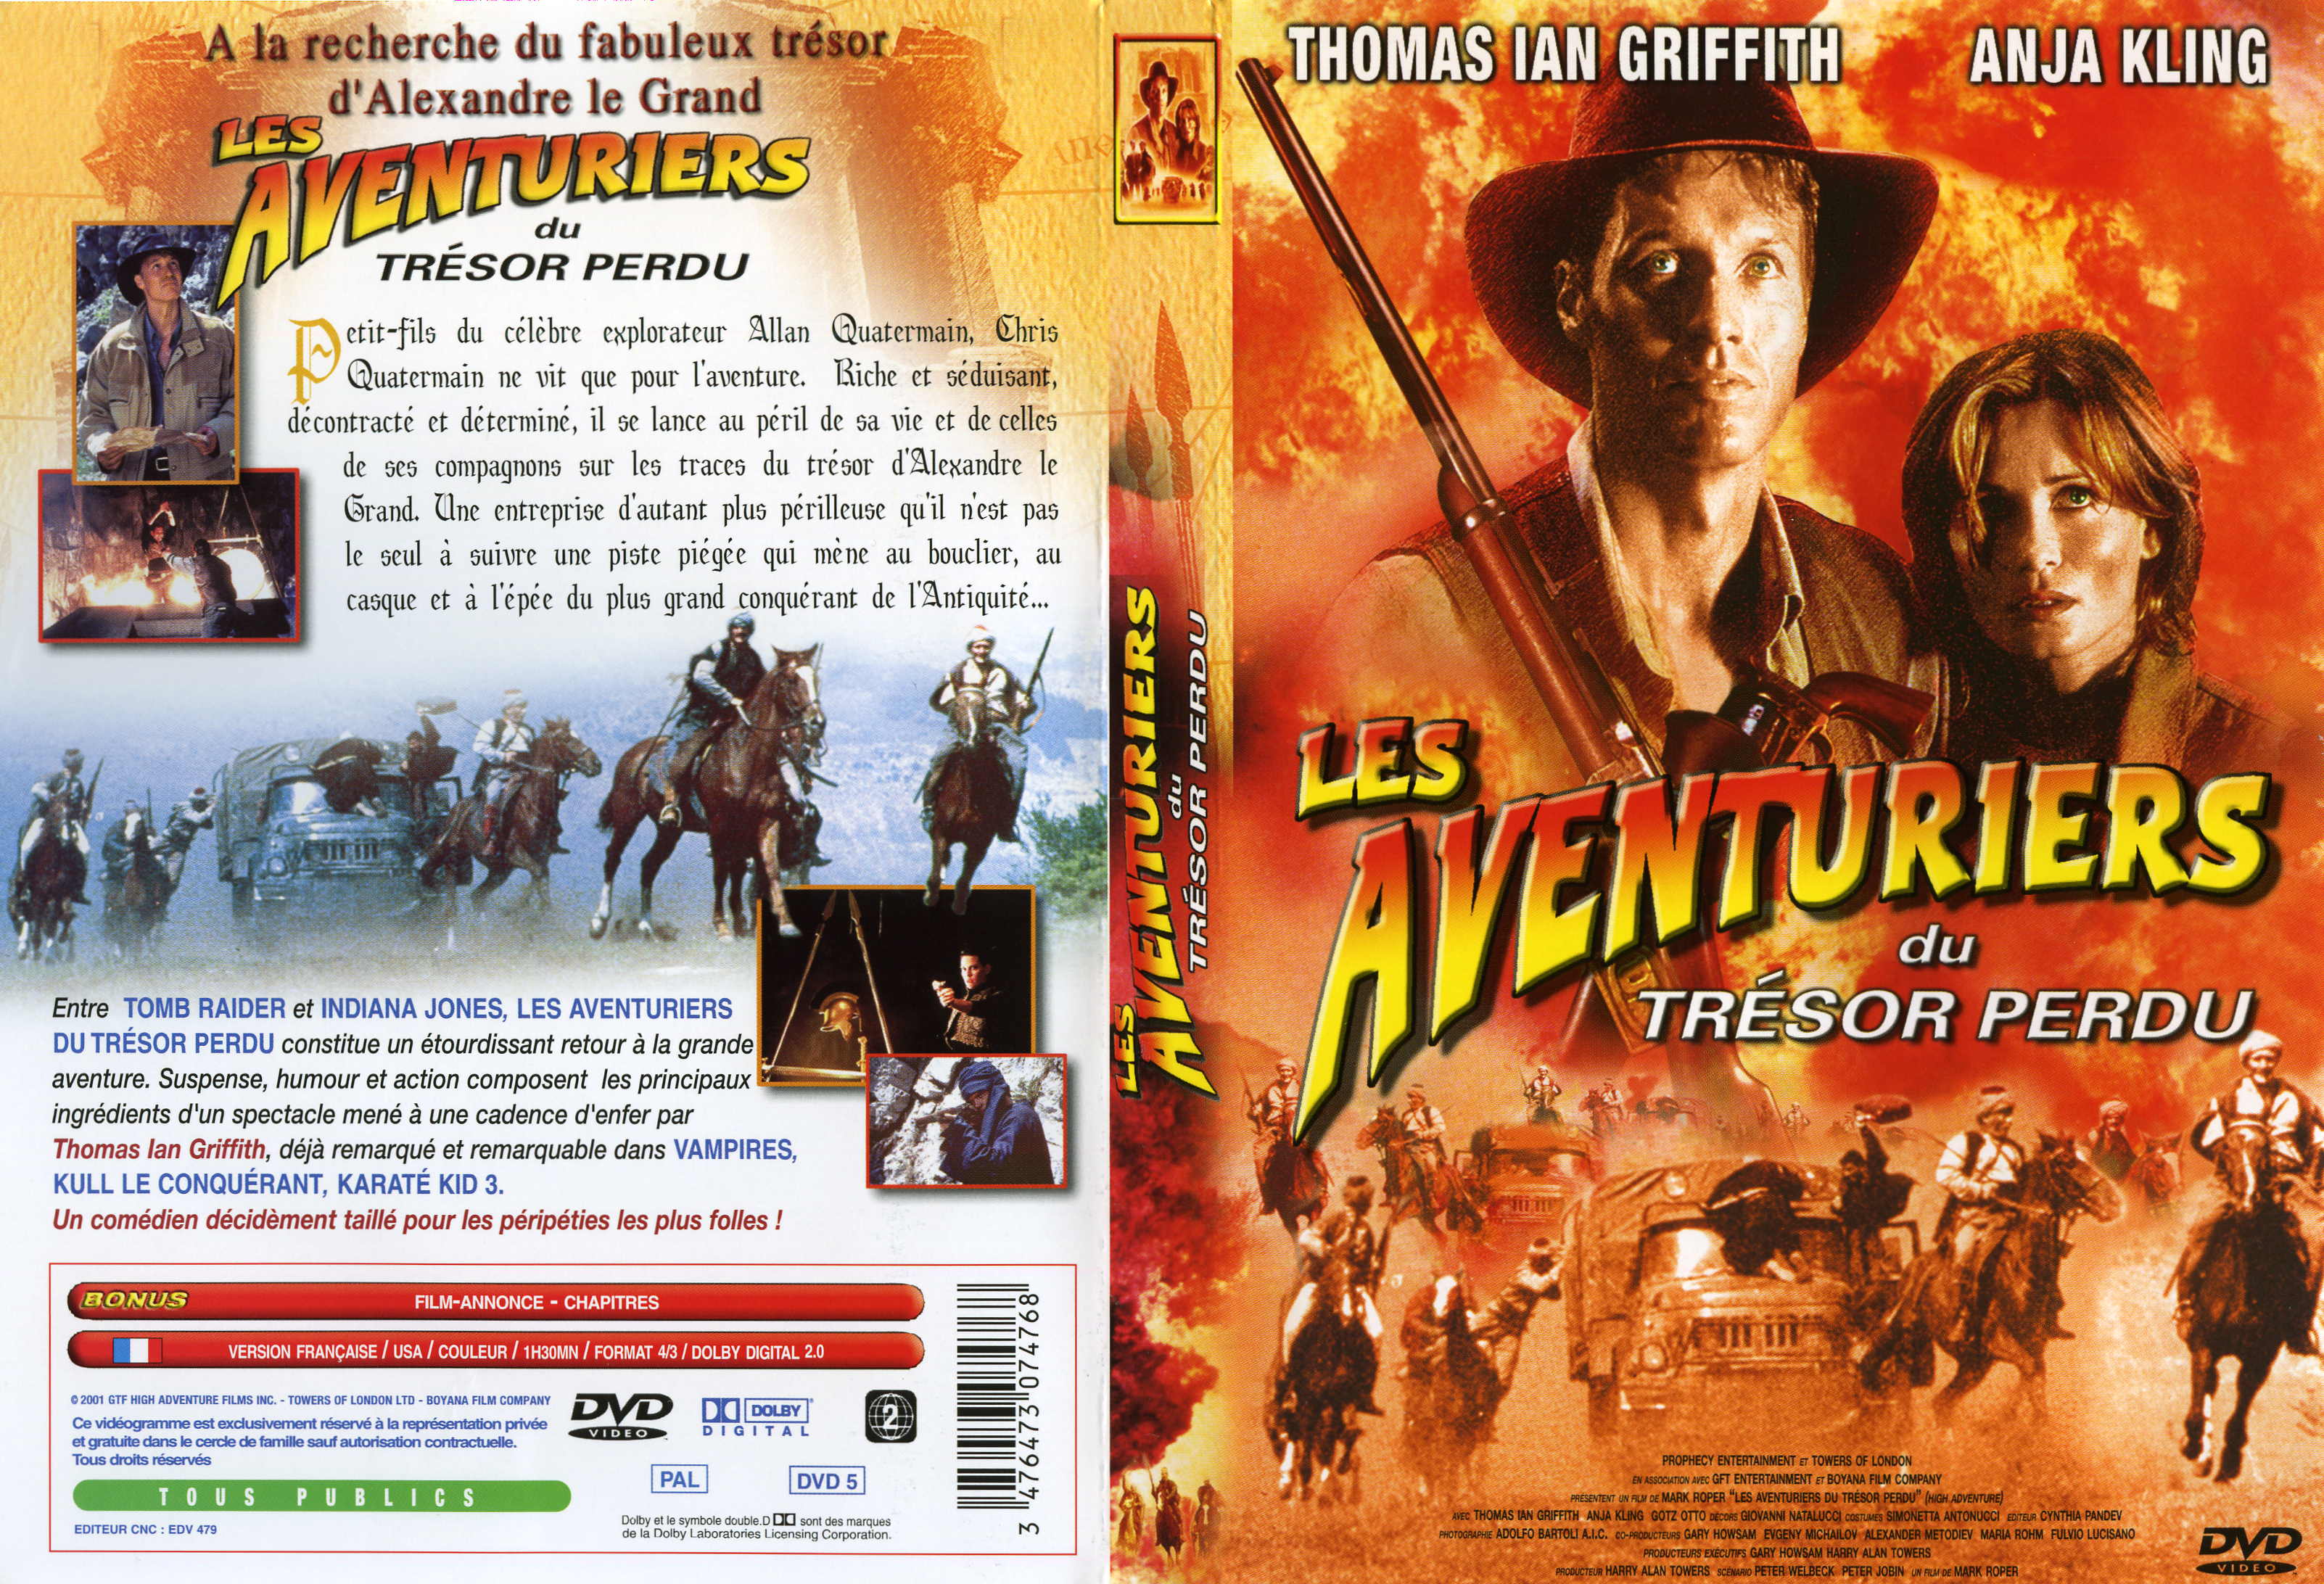 Jaquette DVD Les aventuriers du trsor perdu